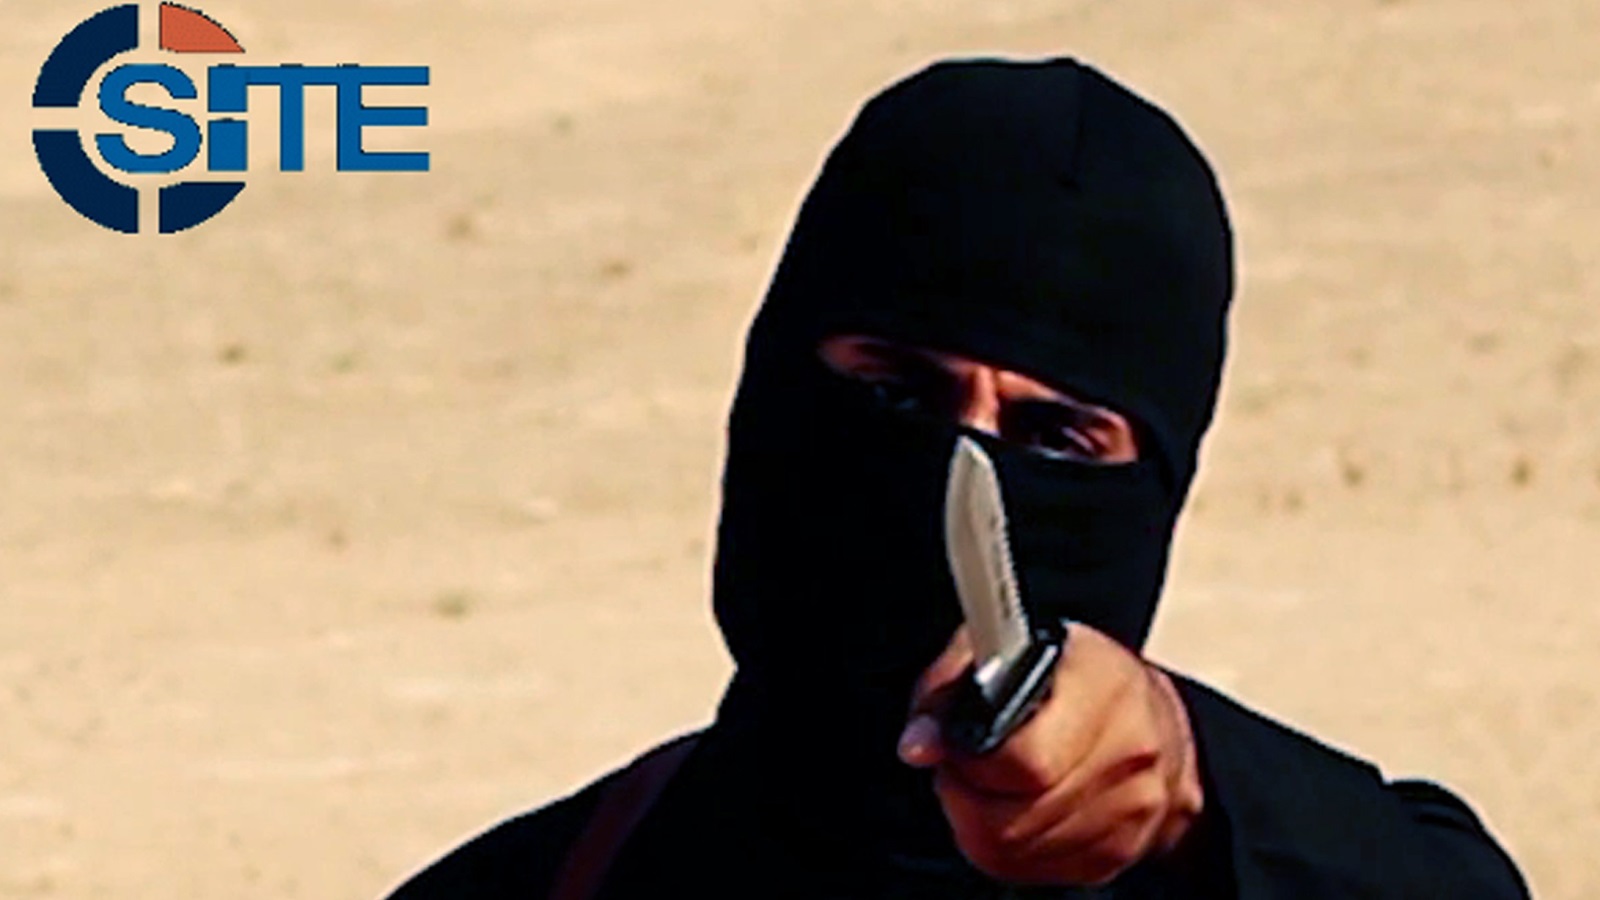 استخدم الإسلاميون المتطرفون مقاطع فيديو تُصور الرهائن من أجل أهداف تكتيكية، إلا أن تصوير عمليات الإعدام أو الهجمات في مقاطع فيديو بغرض نشرها على الملأ، هو تطور جديد